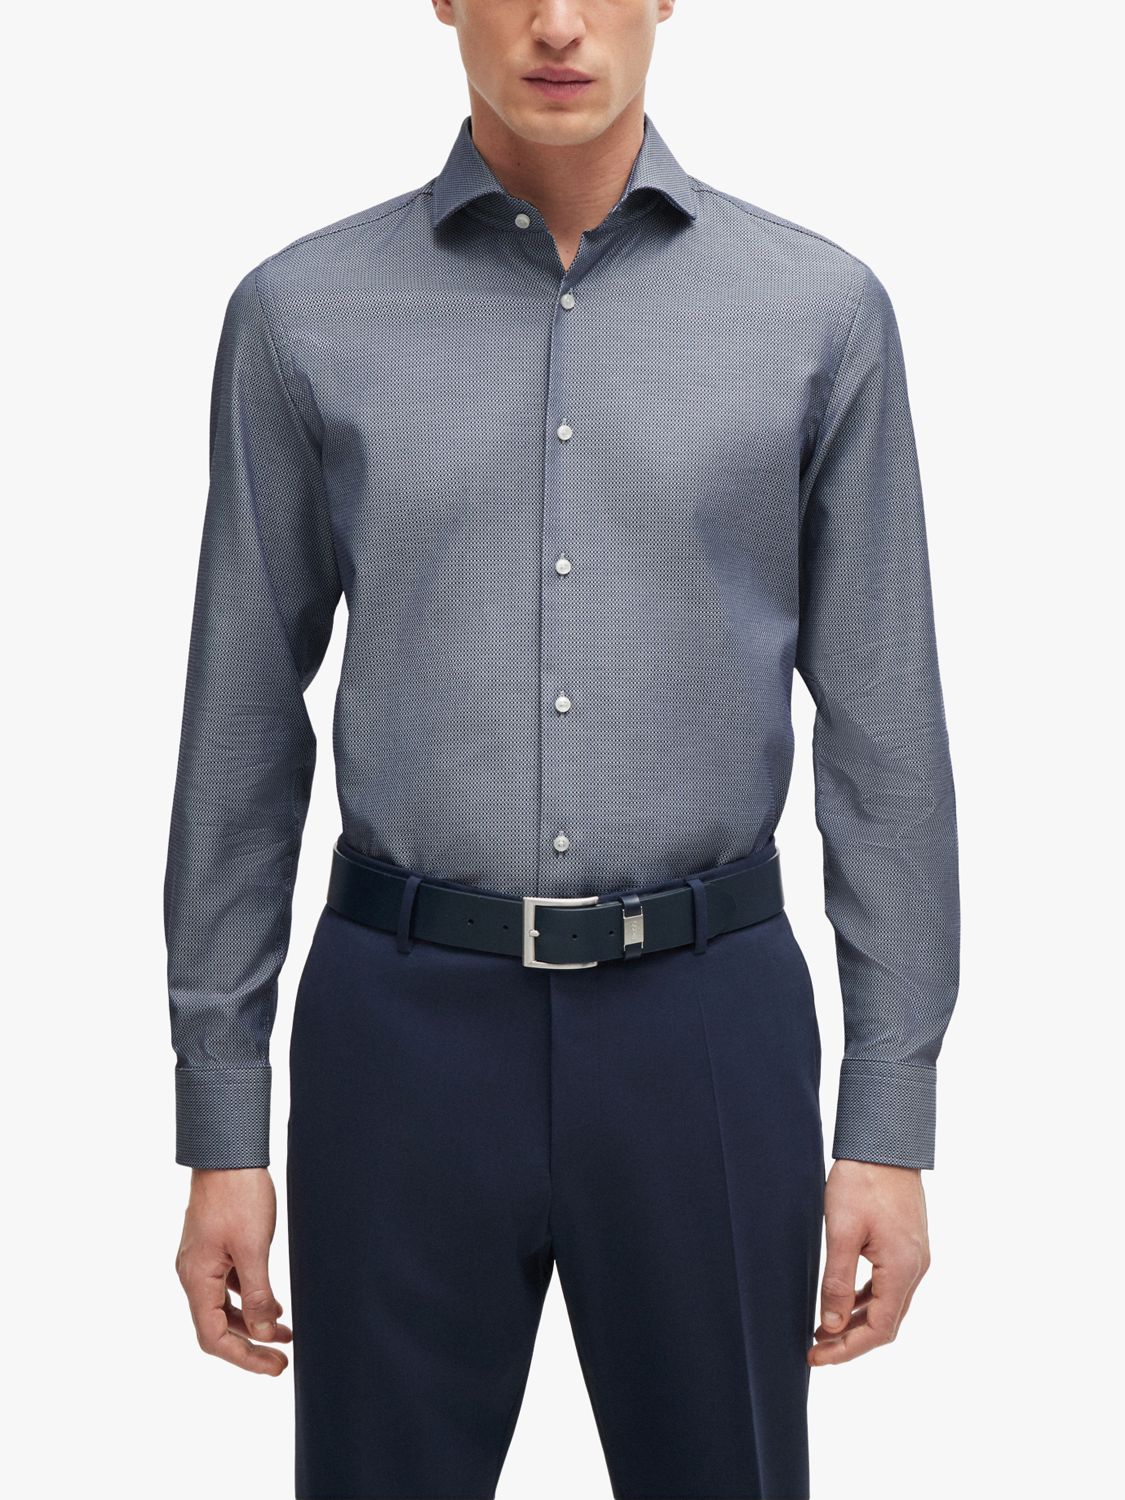 BOSS H-Hank Spread Slim Fit Shirt, Navy, 17.75L